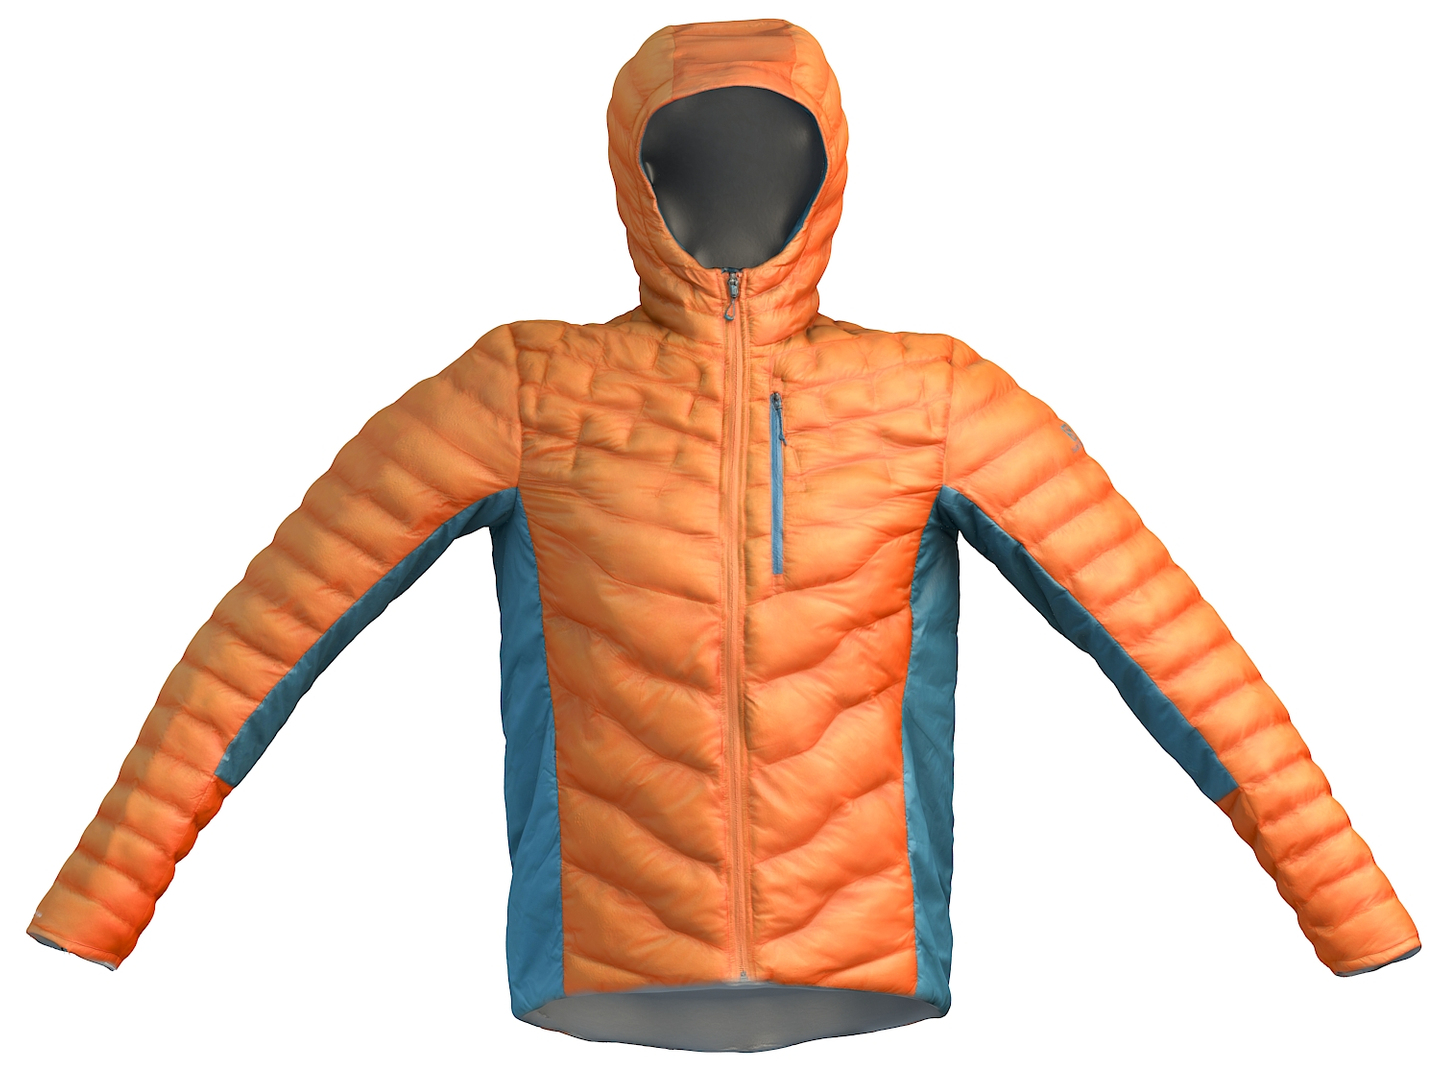 Winter Jacket 3D model - TurboSquid 1869056